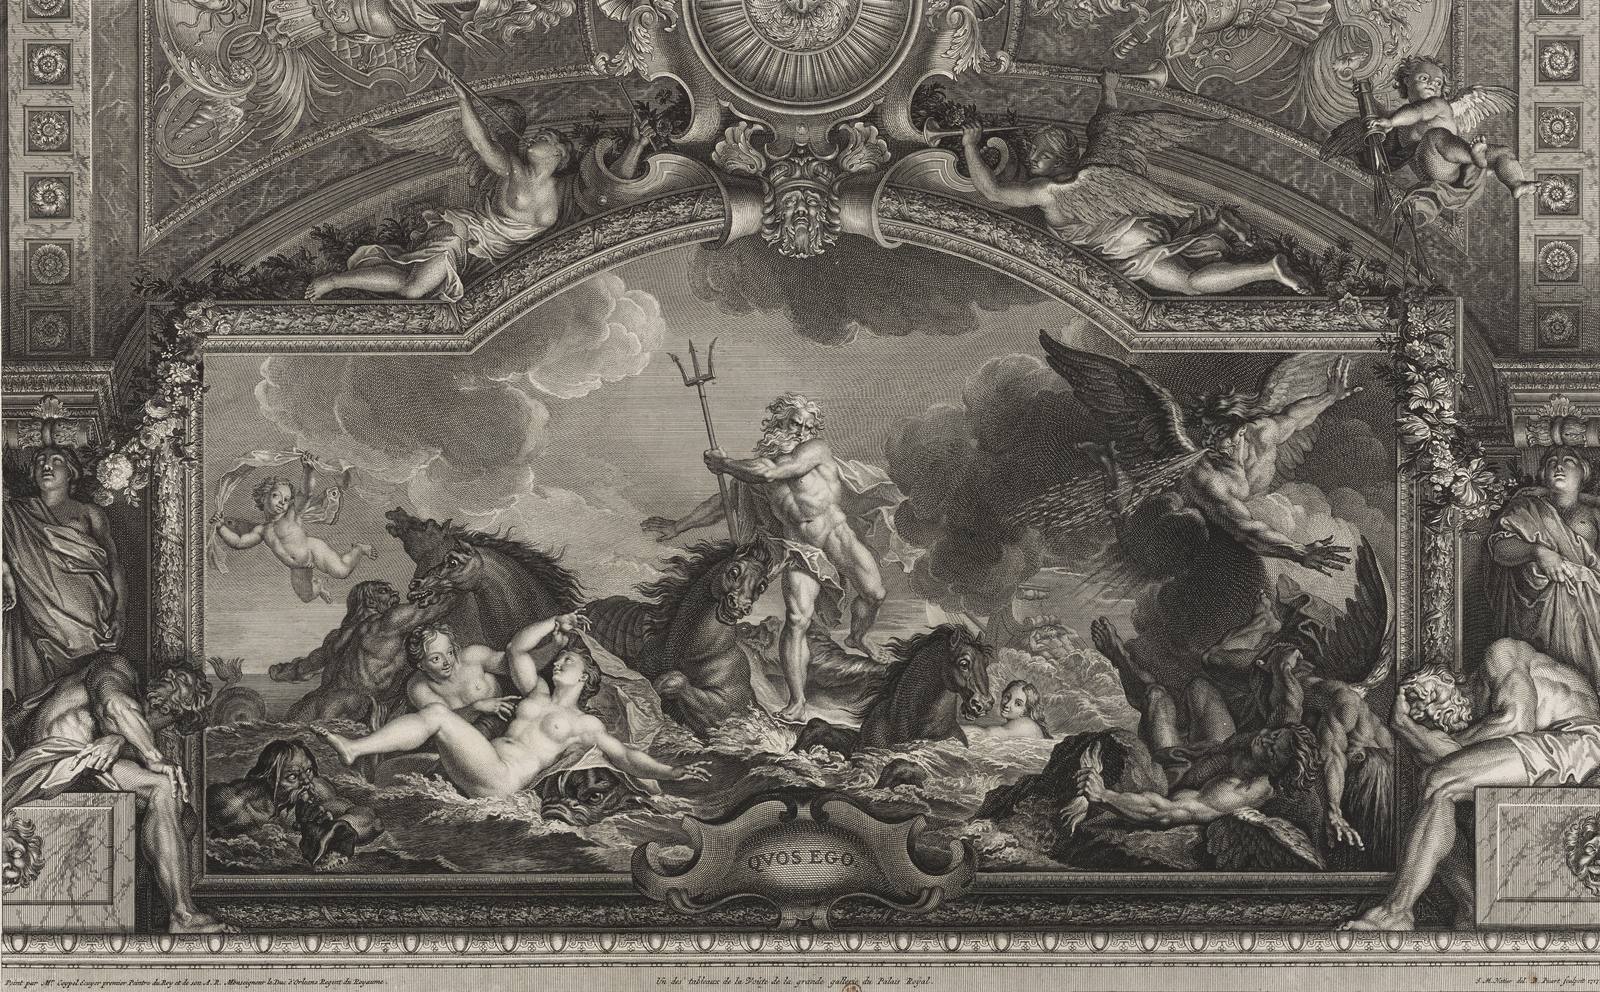 Grand tableau en Compigné représentant le Palais Royal - XVIIIe siècle -  N.103826